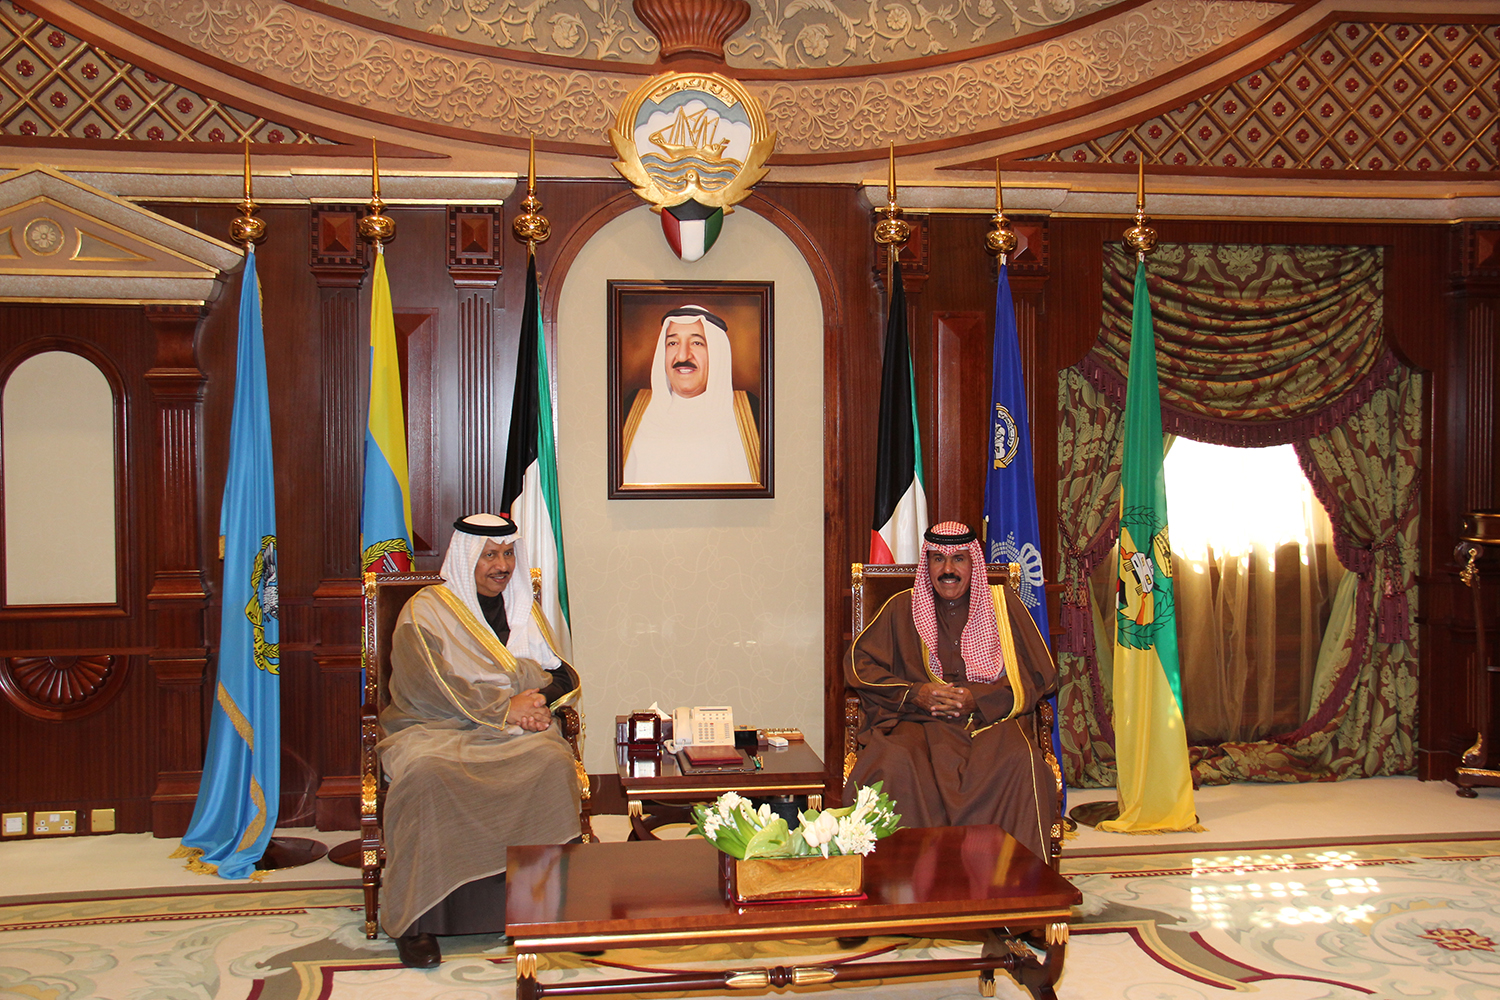 His Highness the Crown Prince Sheikh Nawaf Al-Ahmad Al-Jaber Al-Sabah received His Highness the Prime Minister Sheikh Jaber Al-Mubarak Al-Hamad Al-Sabah